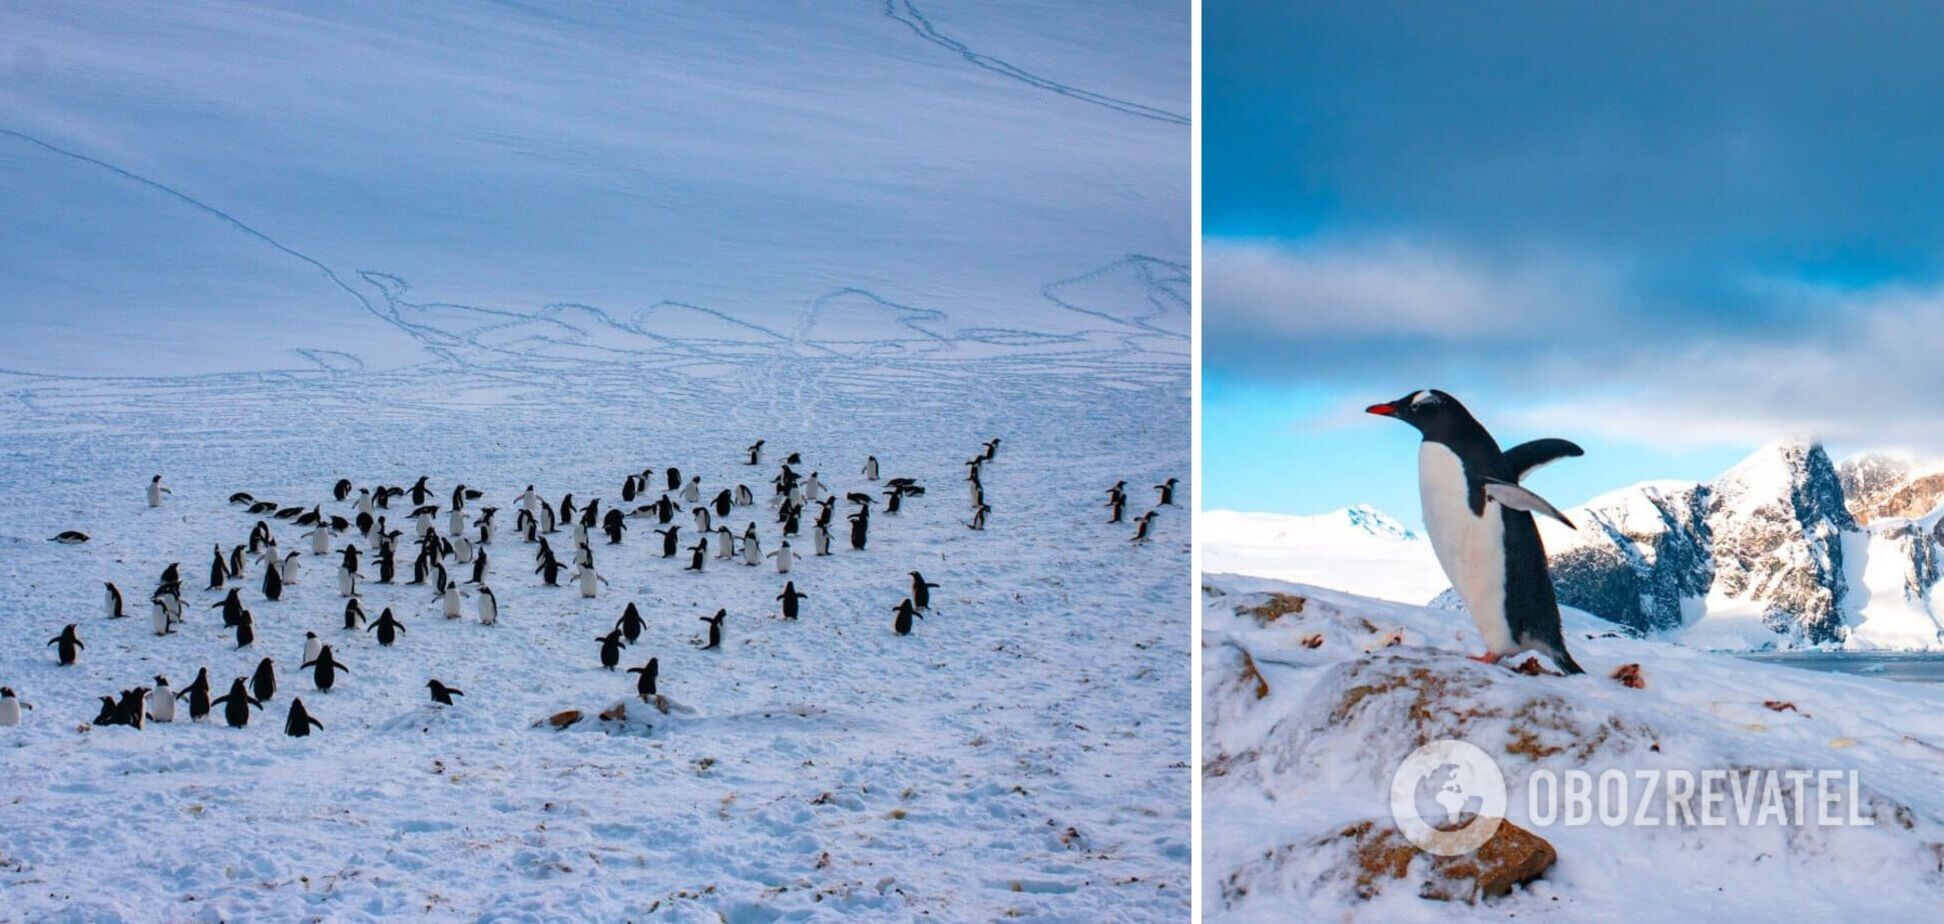  Станцію 'Академік Вернадський' окупували пінгвіни для гніздування. Фото